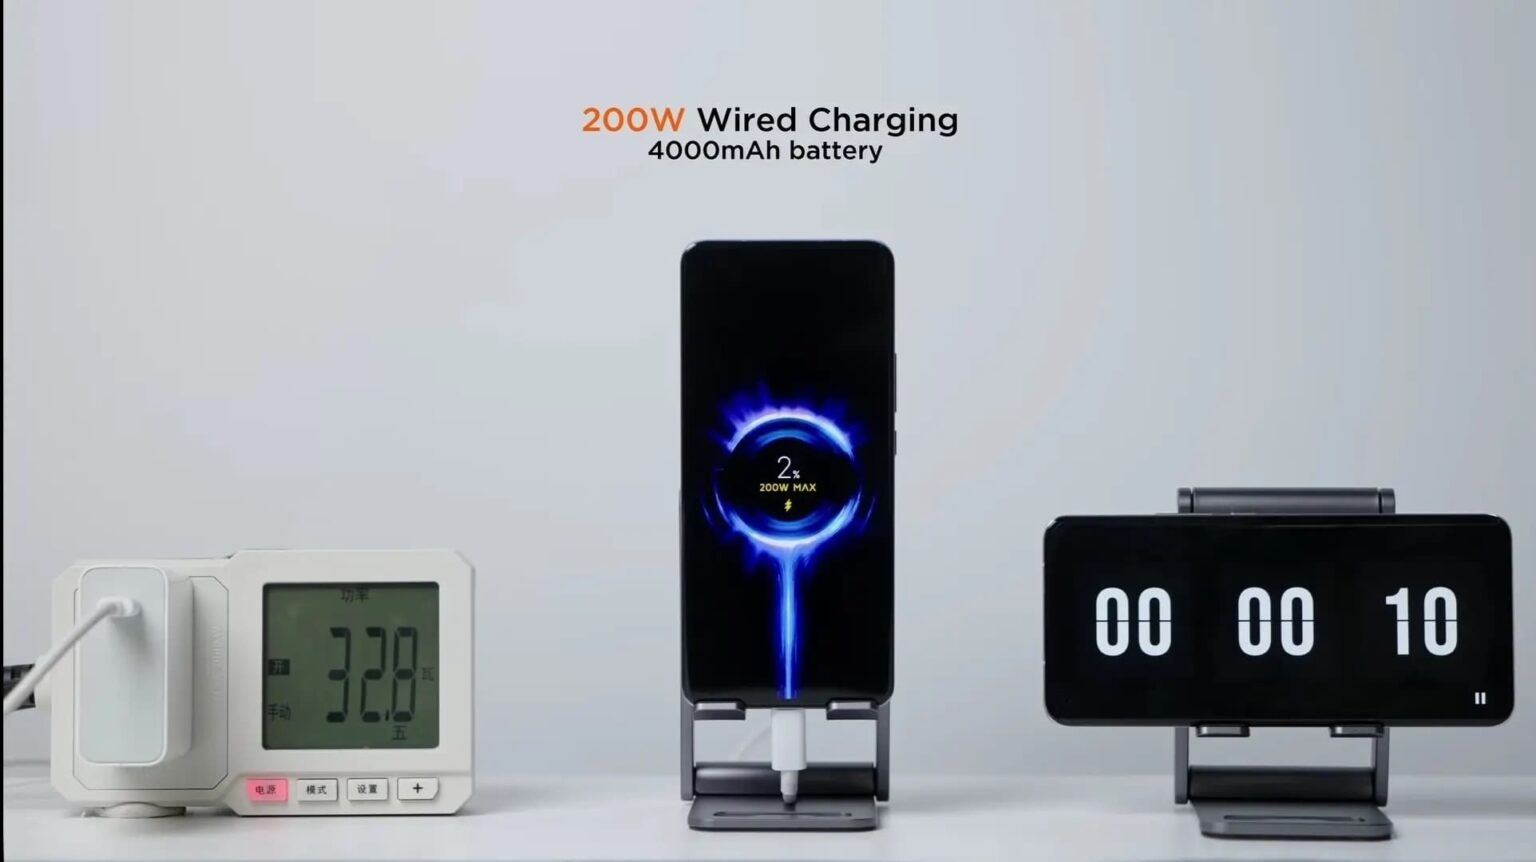  عرضه گوشی شیائومی با پشتیبانی از شارژ سریع 200 واتی یک قدم به واقعیت نزدیکتر شد 